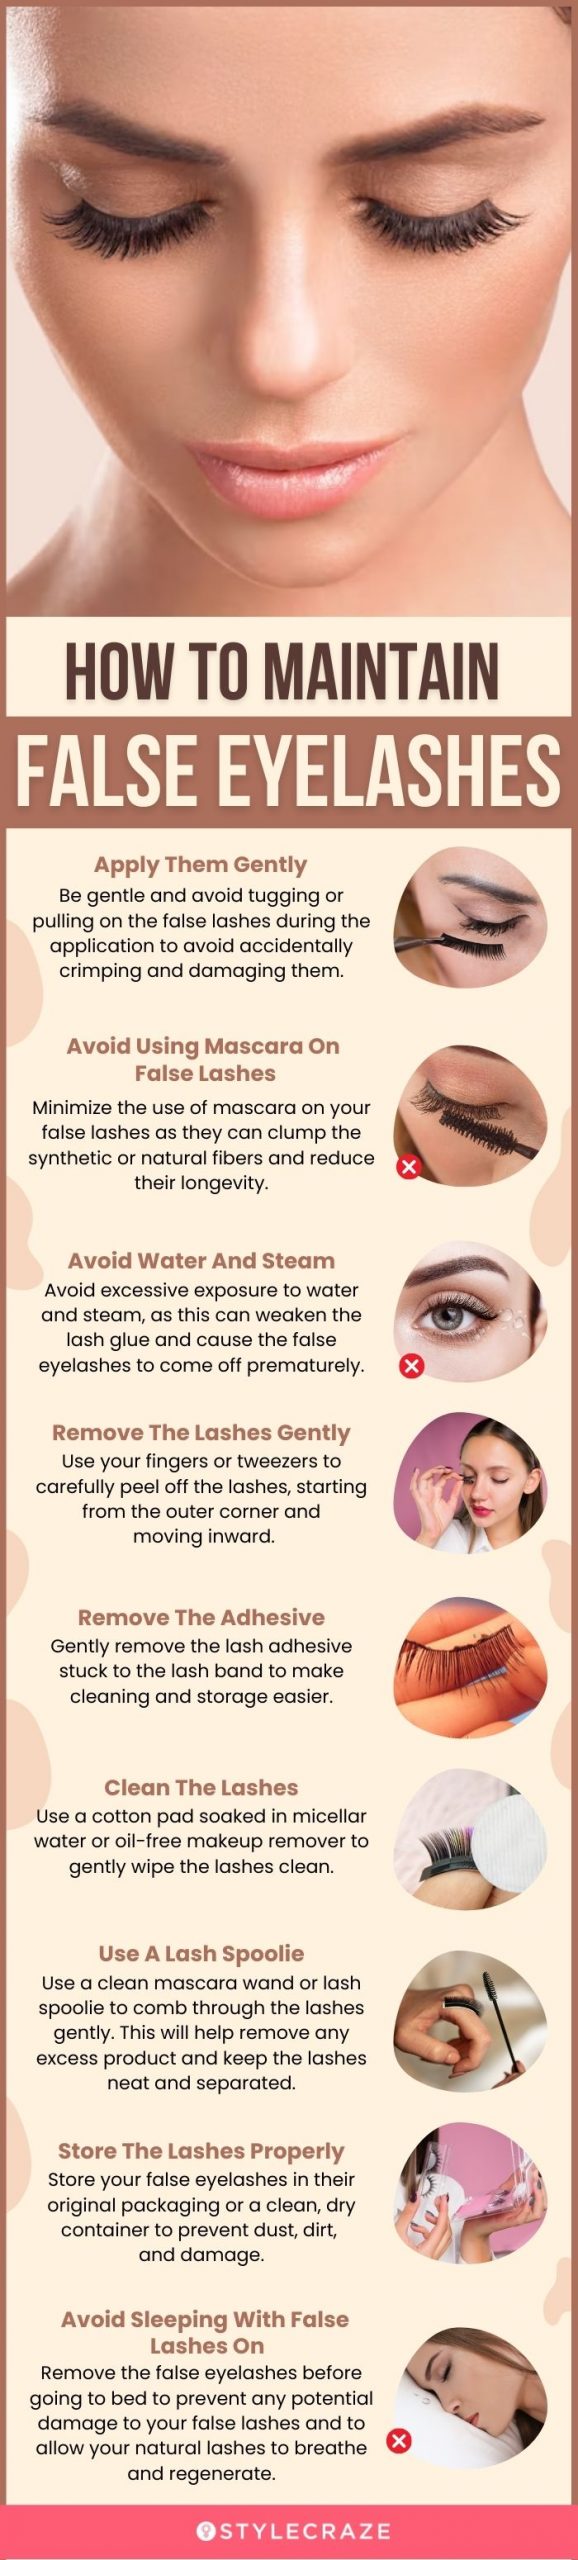 How To Maintain False Eyelashes (infographic)